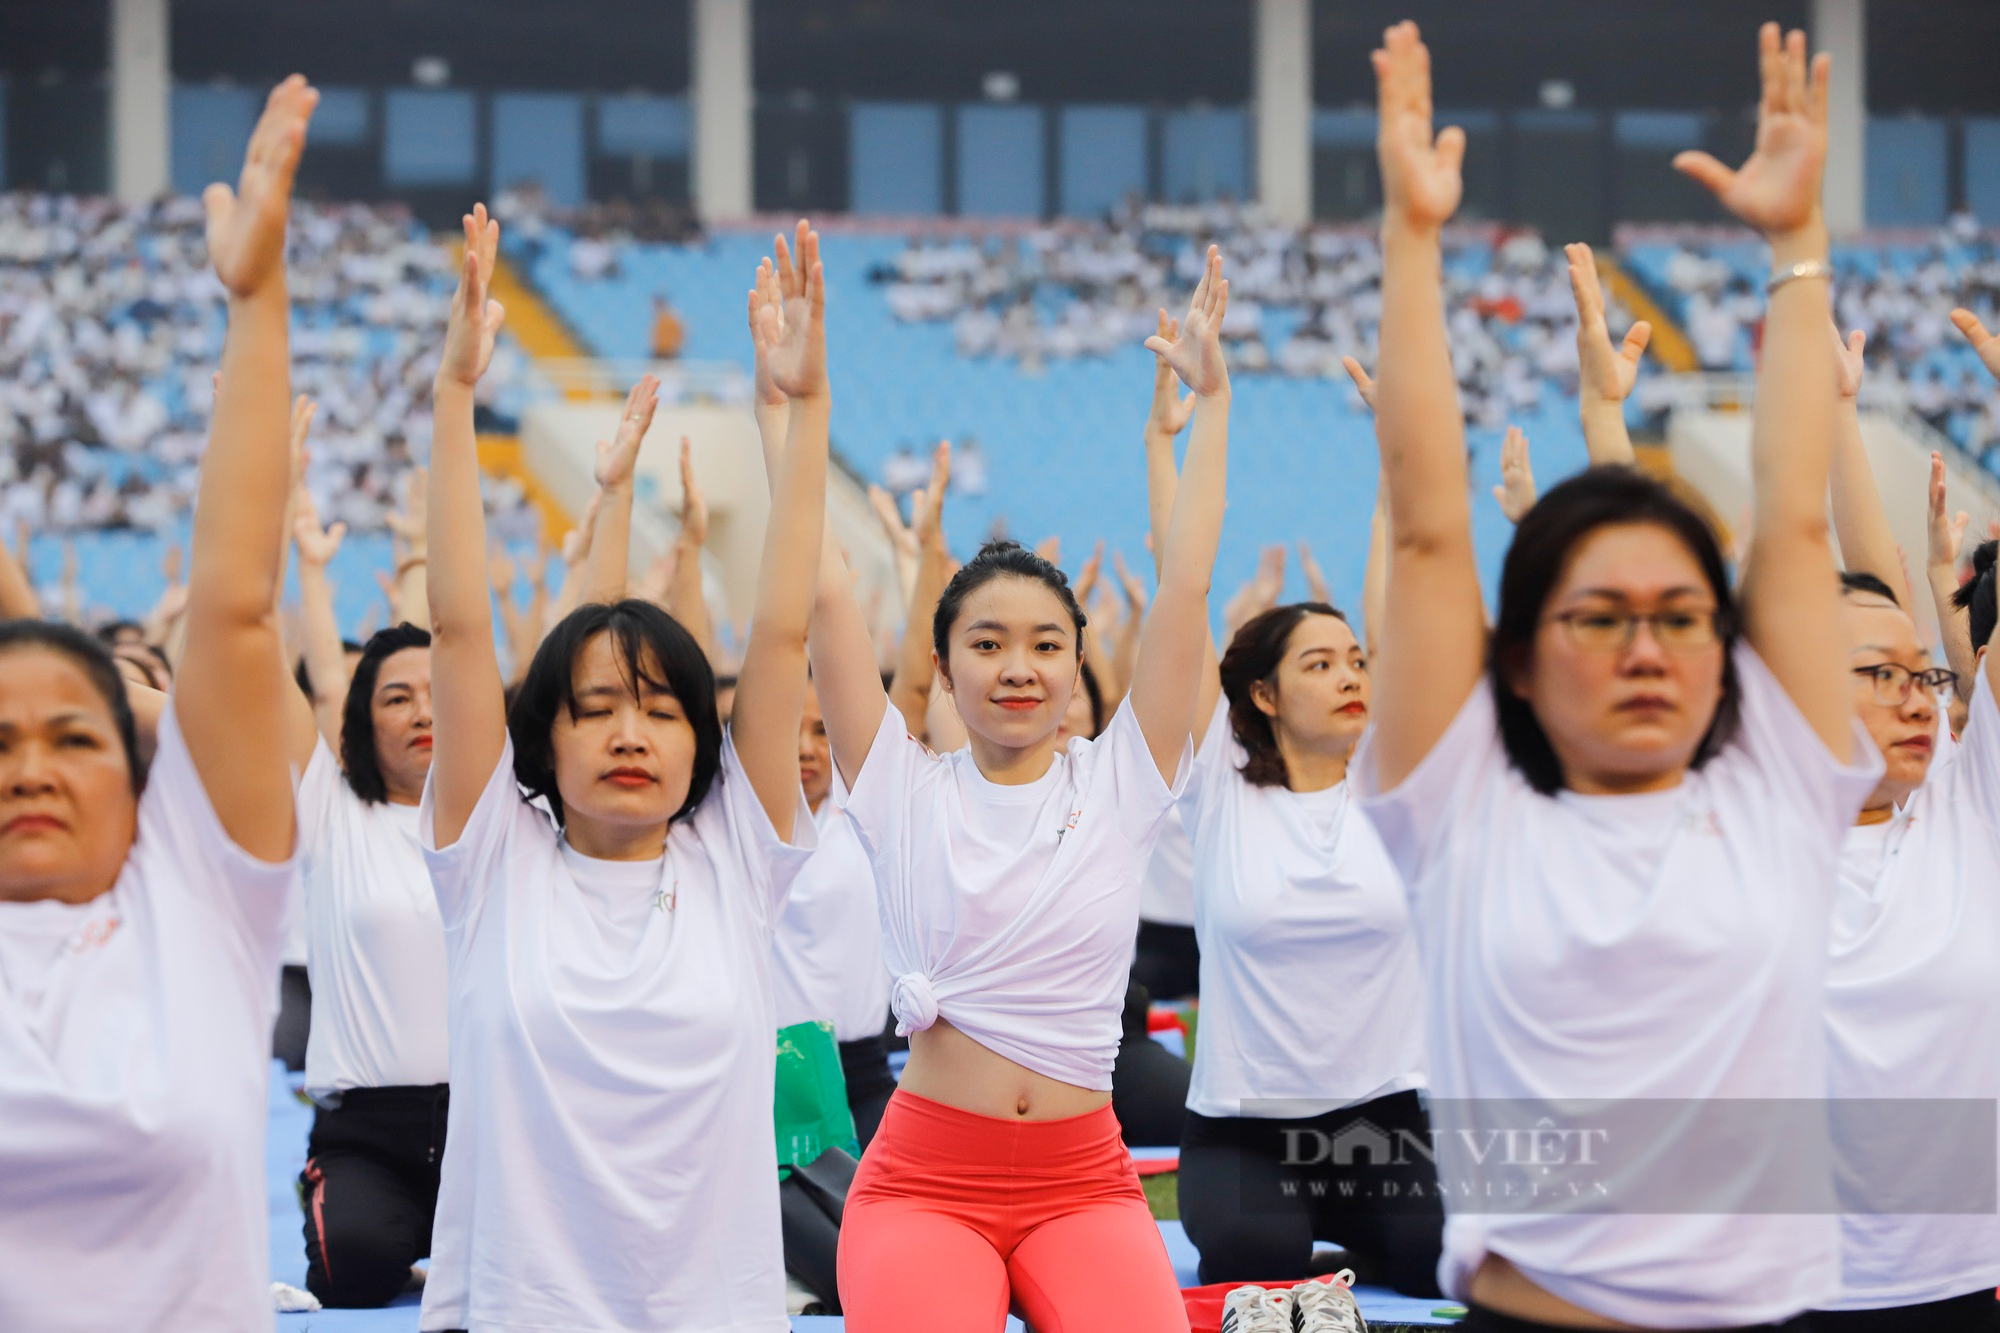 Dàn hoa hậu, á hậu Việt Nam khoe sắc trong màn đồng diễn Yoga đông người nhất Việt Nam - Ảnh 9.